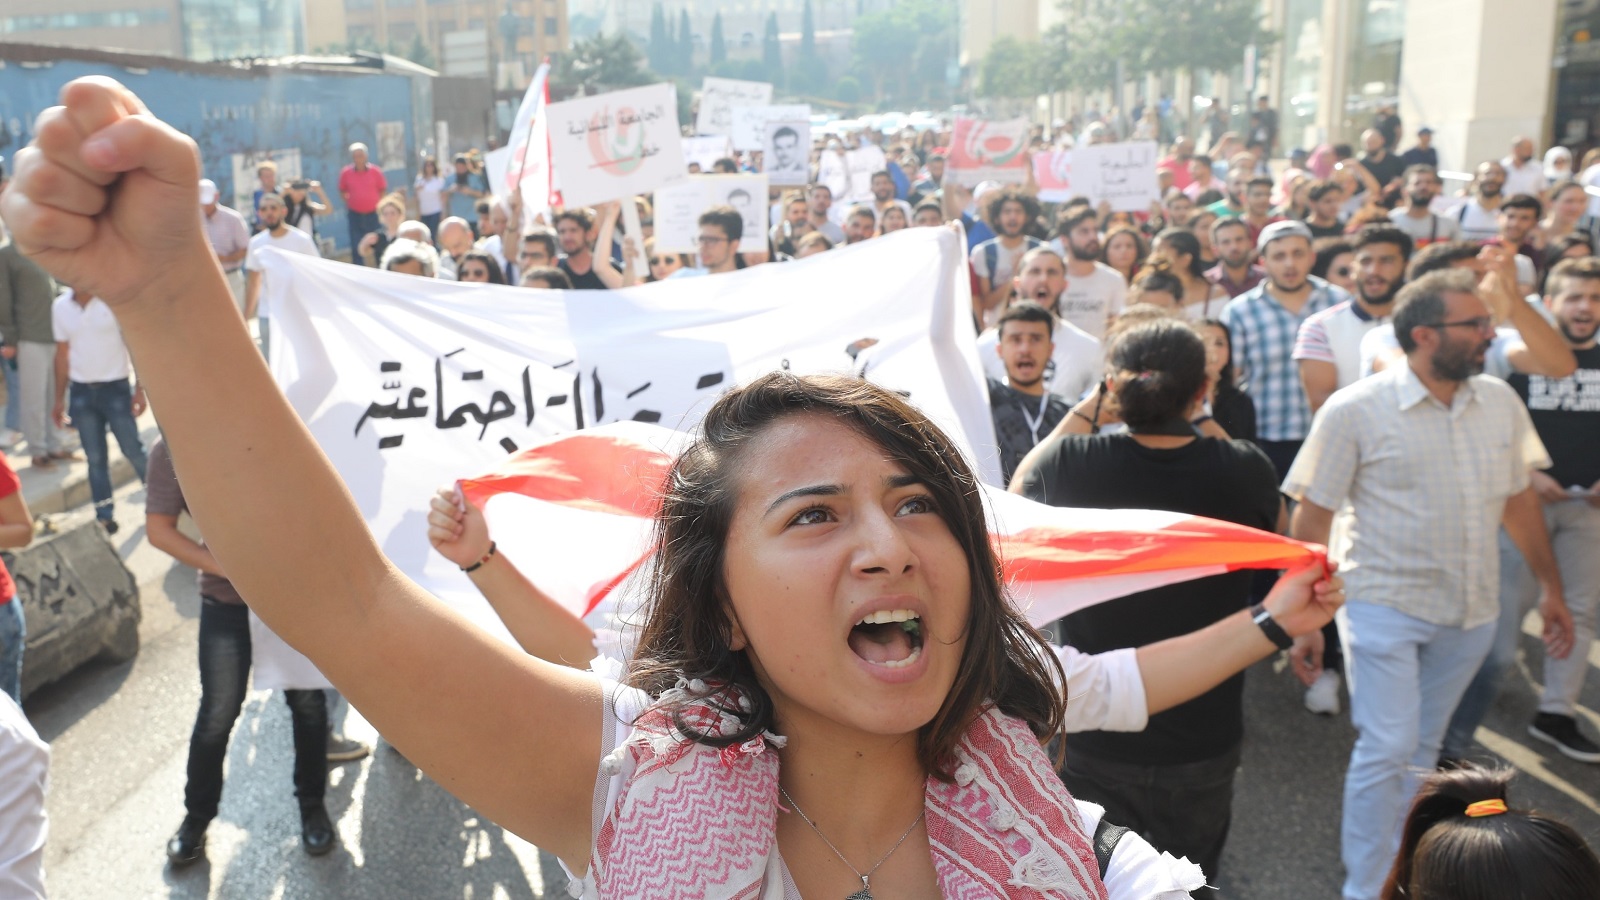 طلاب "اللبنانية" وأساتذتها يتظاهرون.. والحريري "يعيّبهم"